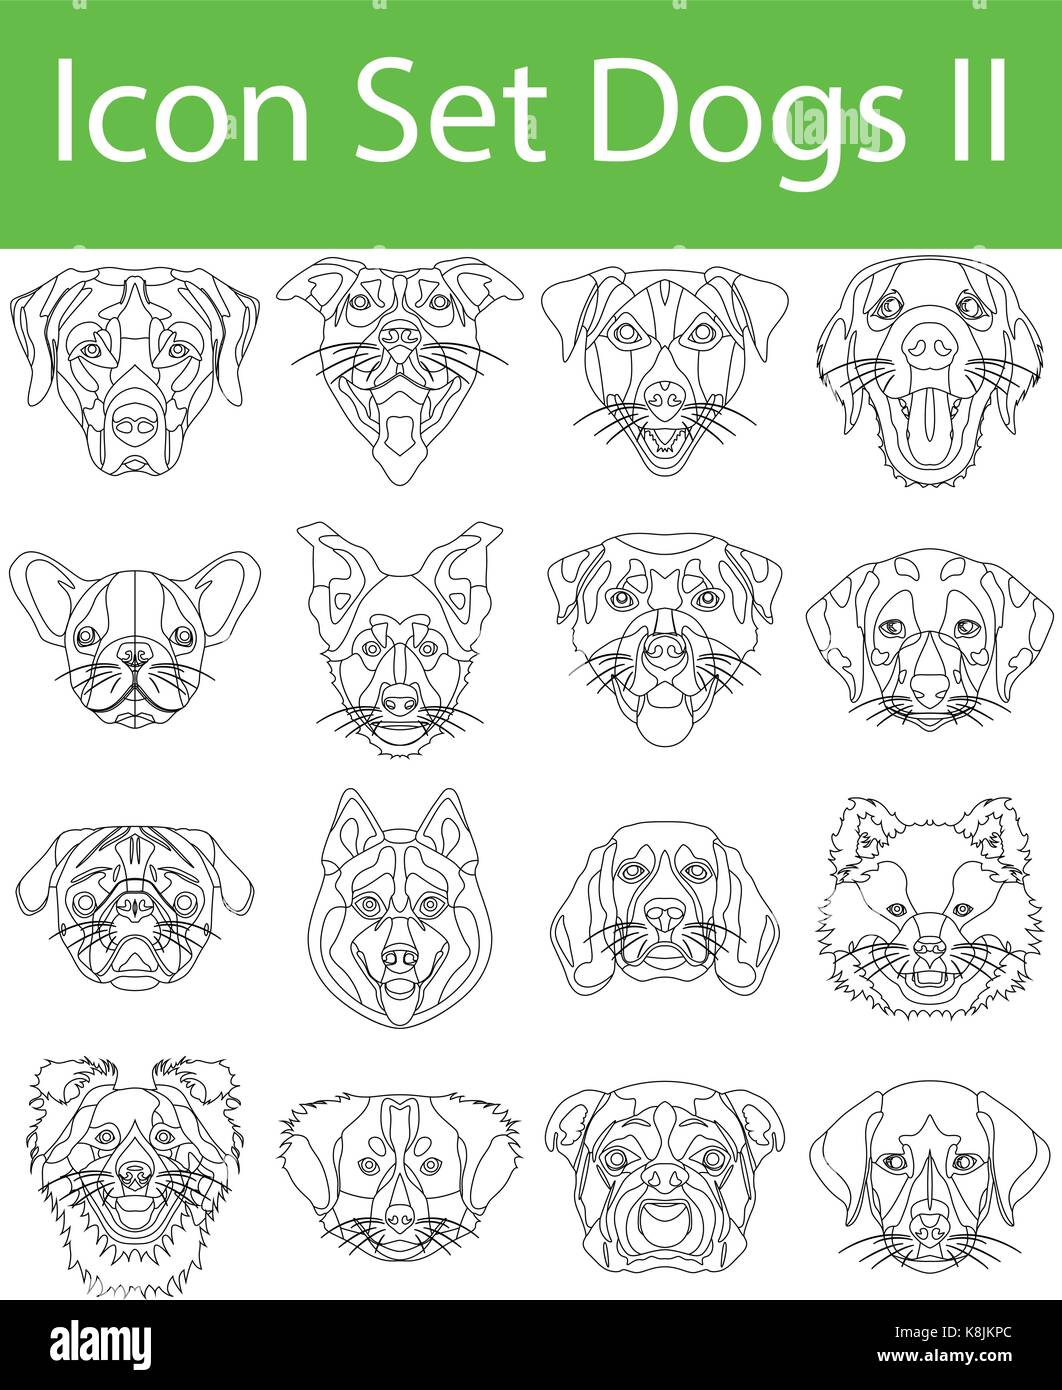 Icon Set Hunde II mit 16 Icons für den kreativen Einsatz in Grafik Design Stock Vektor